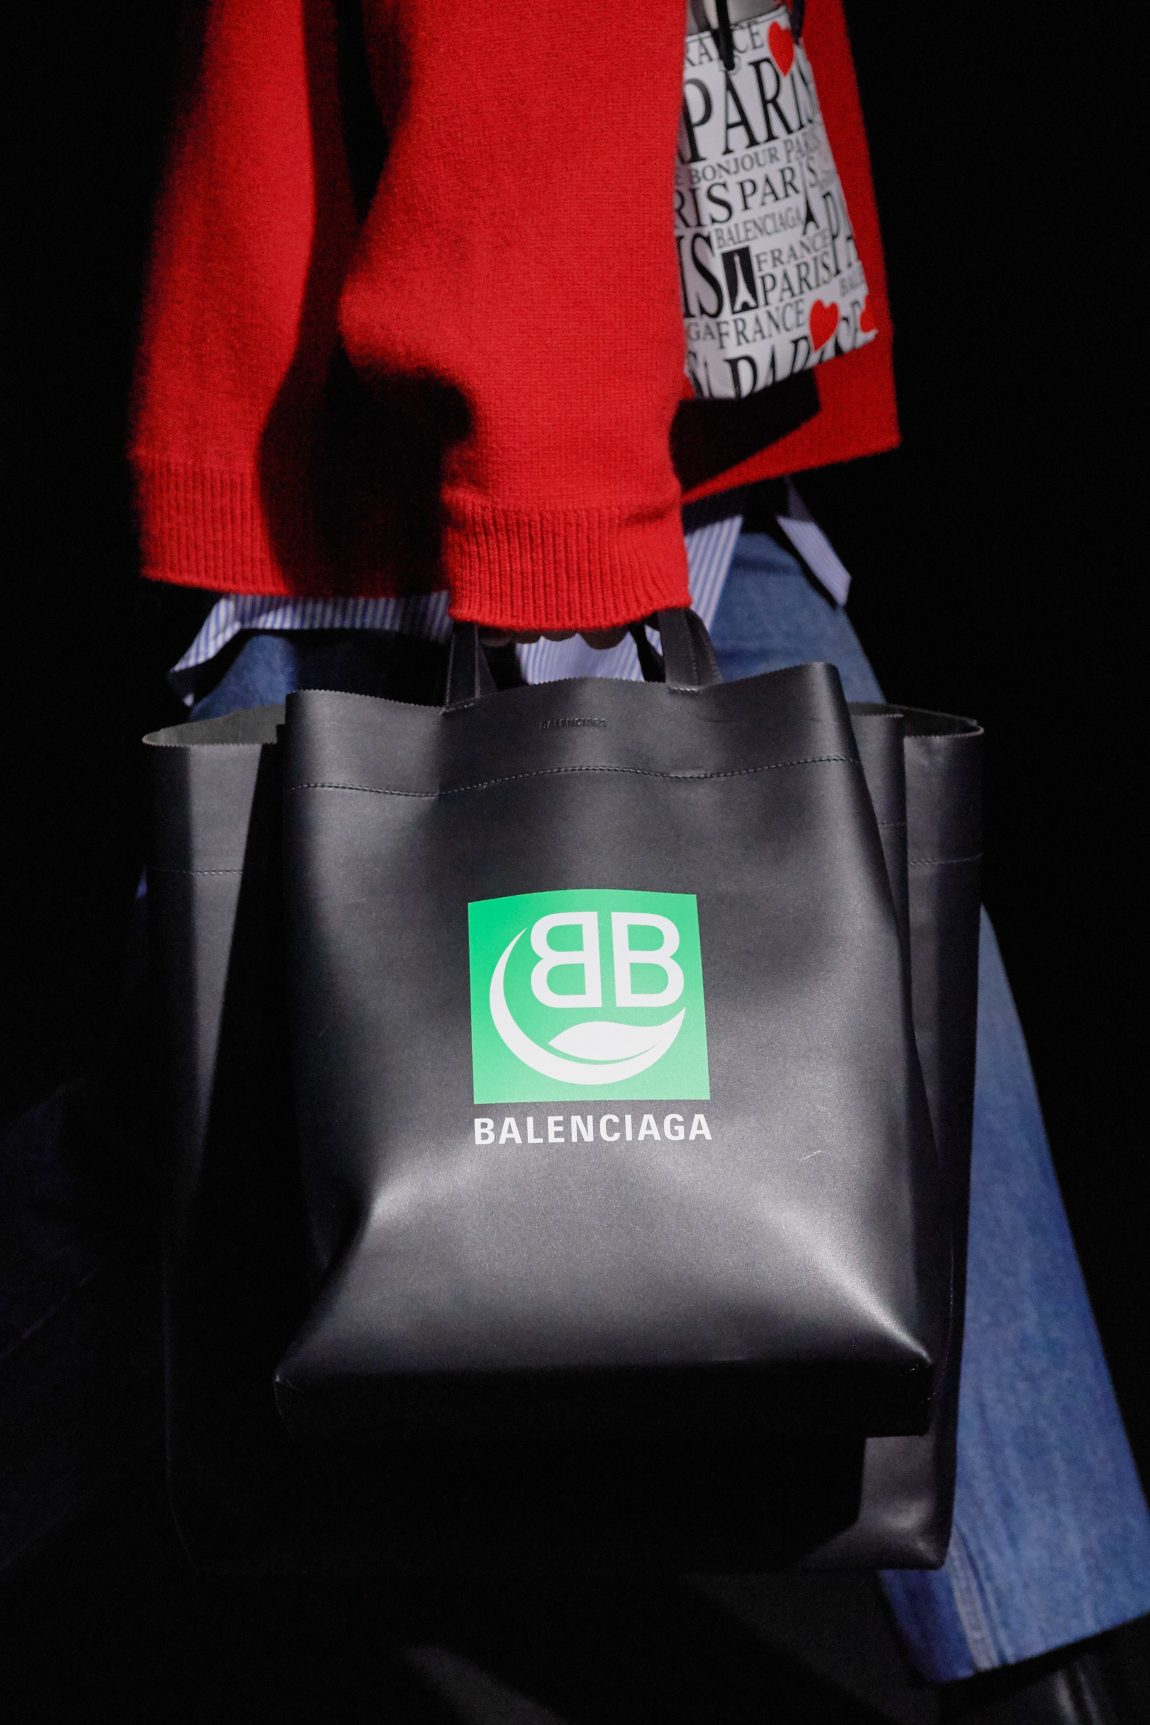 new balenciaga bags 2019